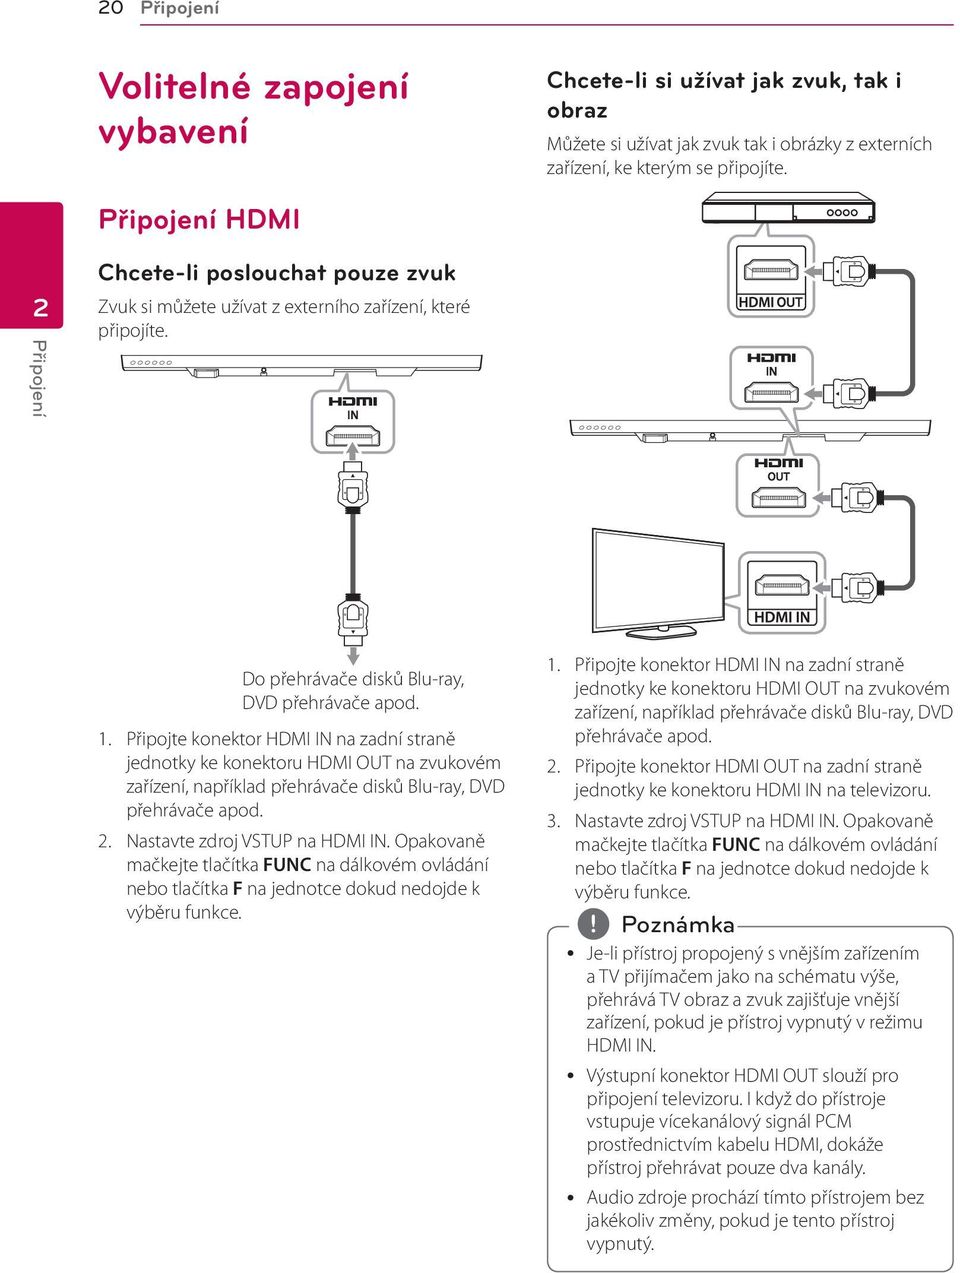 Připojte konektor HDMI IN na zadní straně jednotky ke konektoru HDMI OUT na zvukovém zařízení, například přehrávače disků Blu-ray, DVD přehrávače apod. 2. Nastavte zdroj VSTUP na HDMI IN.